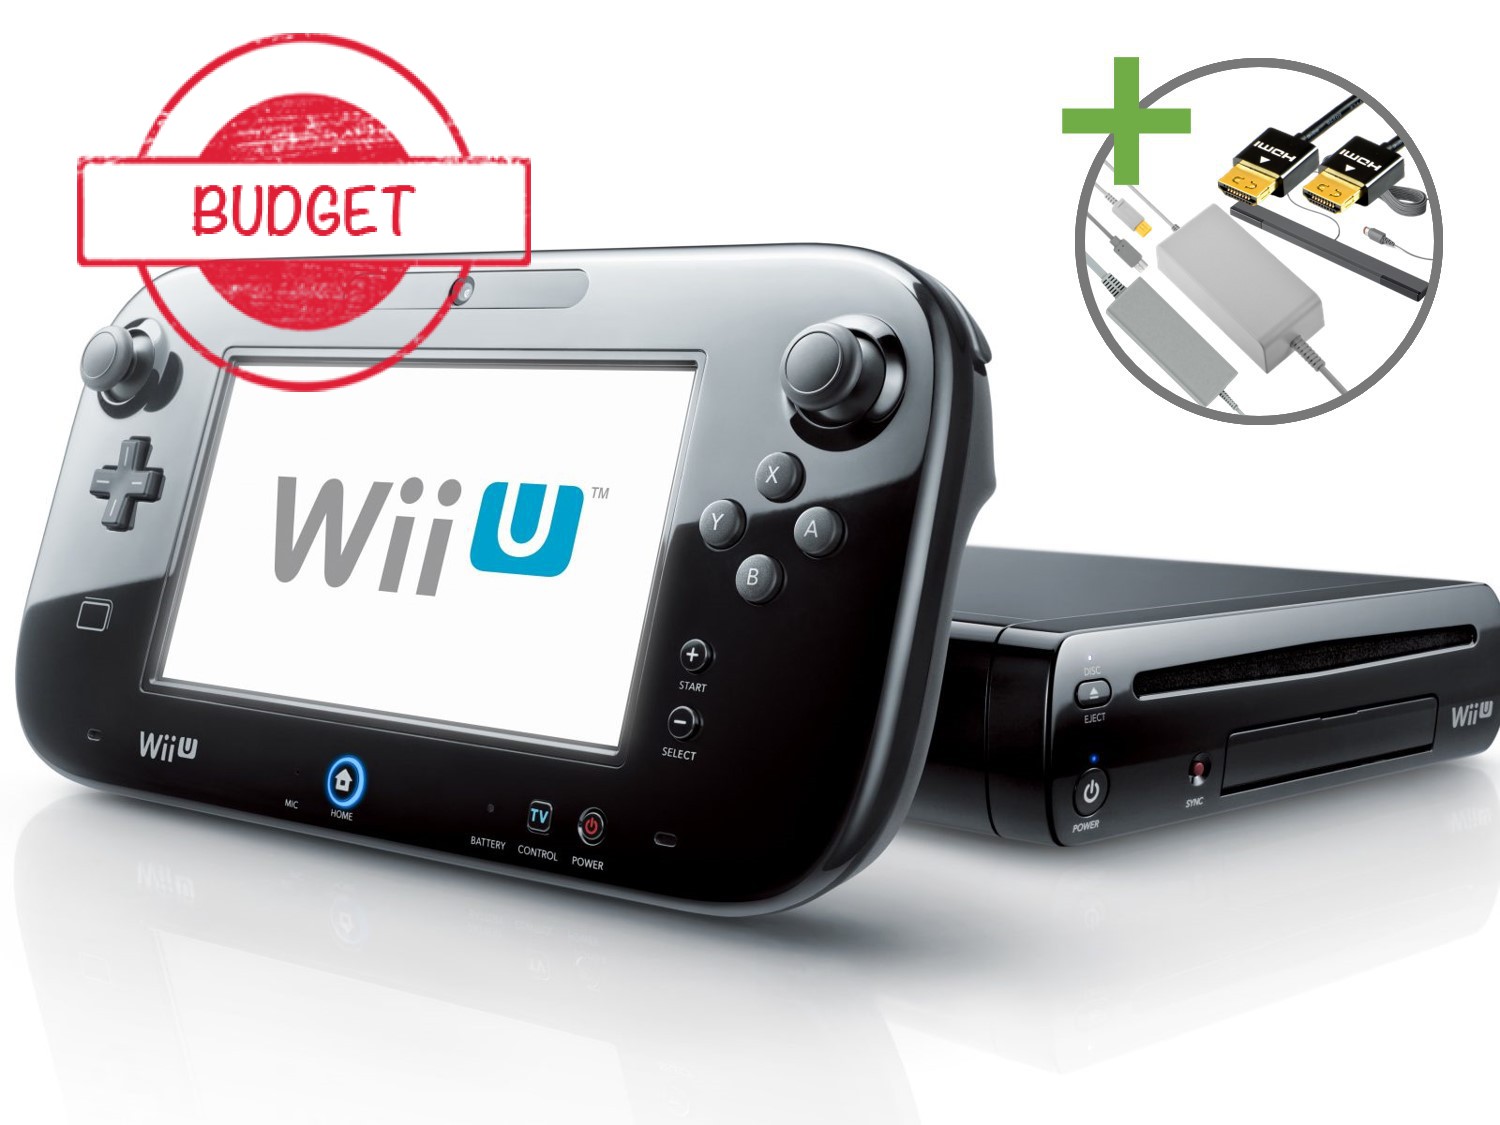 Nintendo Wii U Starter Pack - Basic Black Pack Edition - Budget - Wii U Hardware